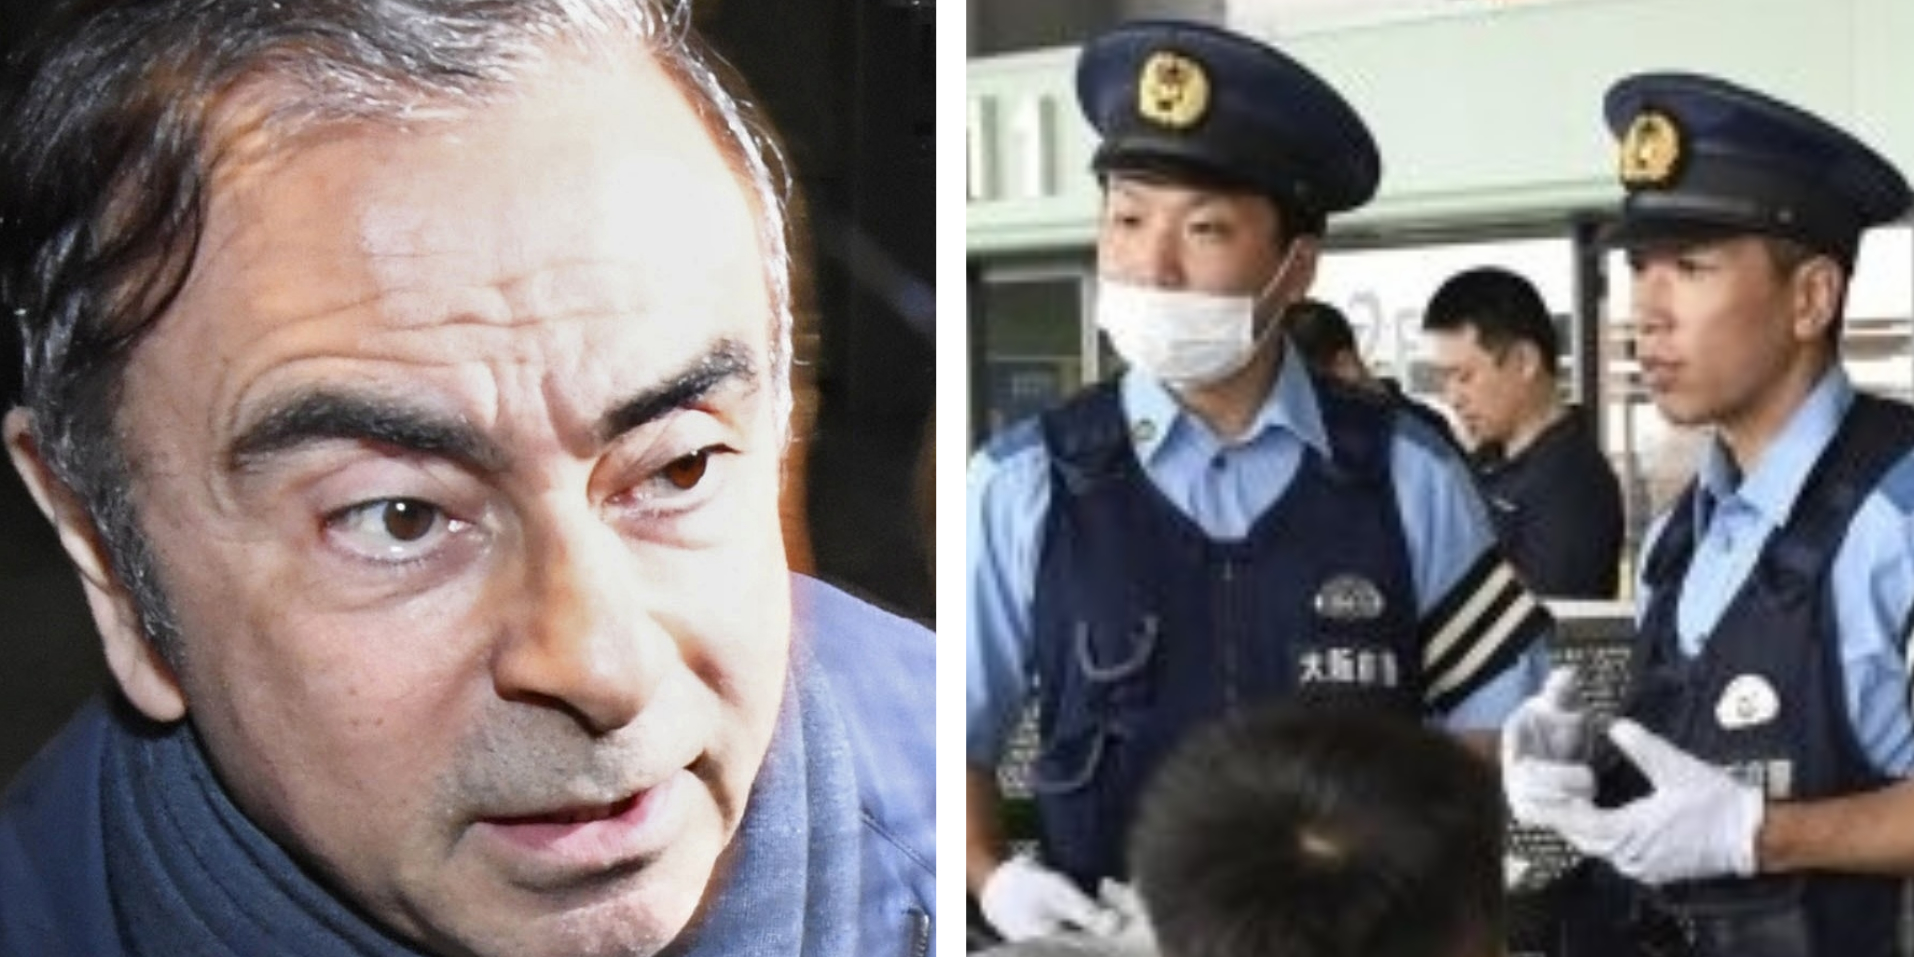 Voormalig Nissan-topman Carlos Ghosn kon ongemerkt uit Japan ontsnappen vanwege een simpele beperking van de bagagescanner op het vliegveld van Osaka, melden The Wall Street Journal en Nikkei Asian Review.